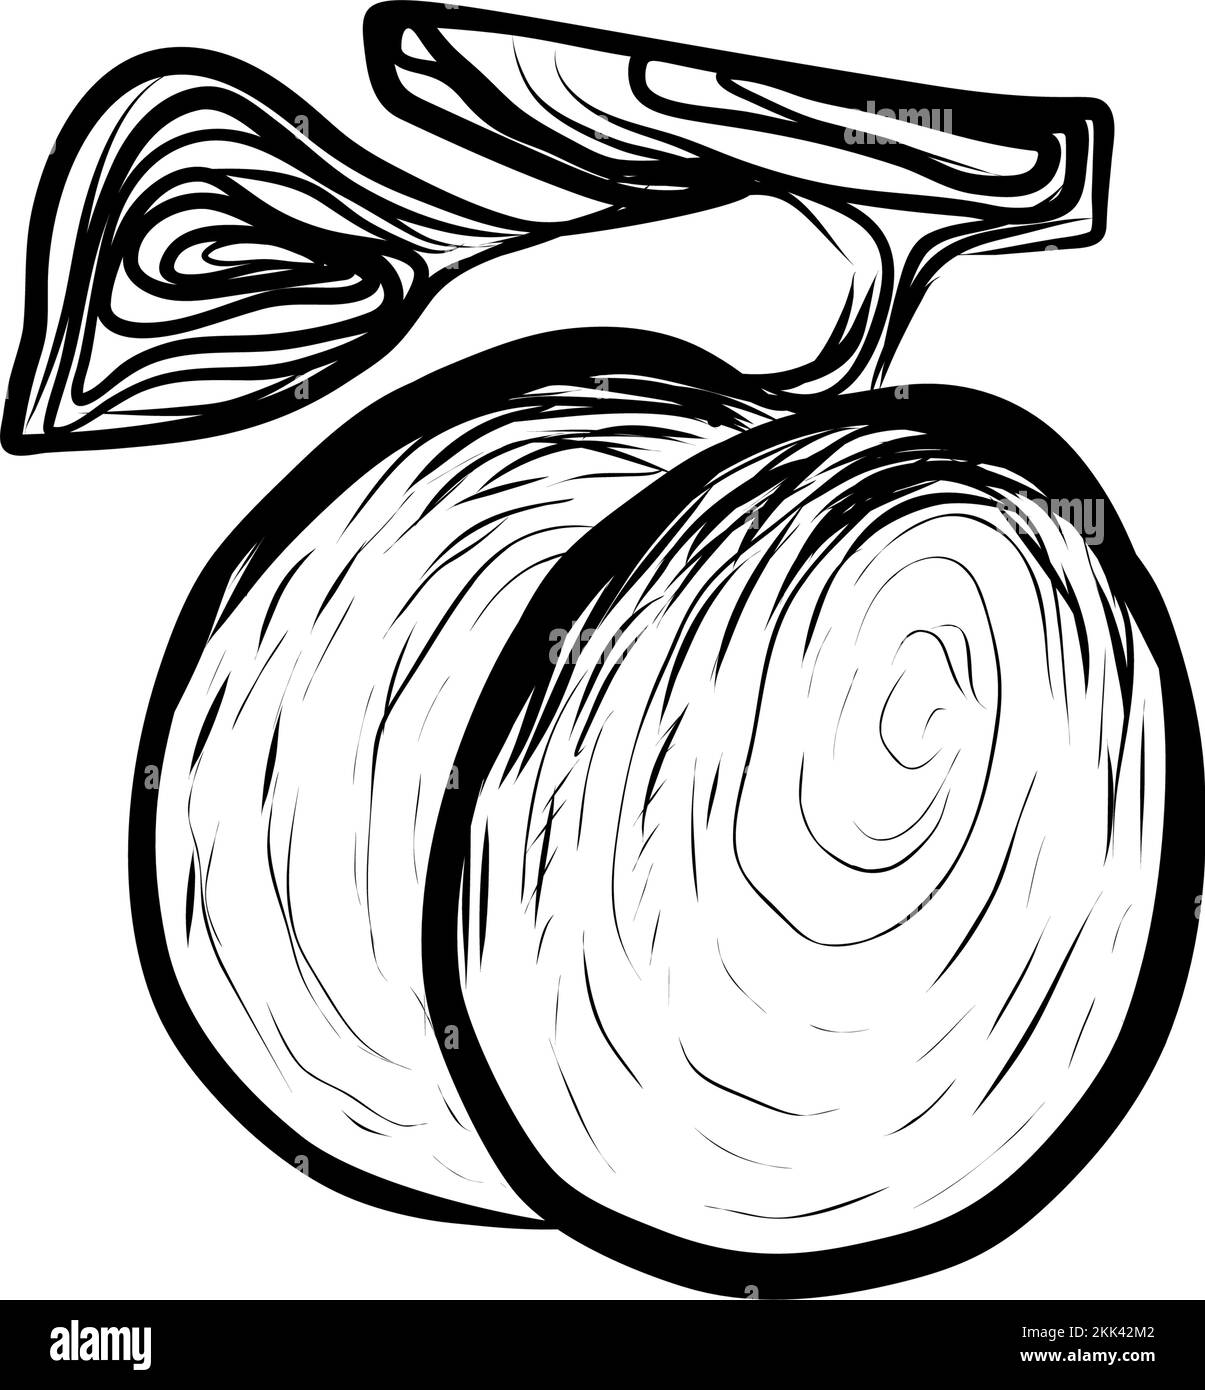 Disegno Illustrazione di susine fresche di Sappy fecondo. Icona disegnata a mano su sfondo bianco Illustrazione Vettoriale